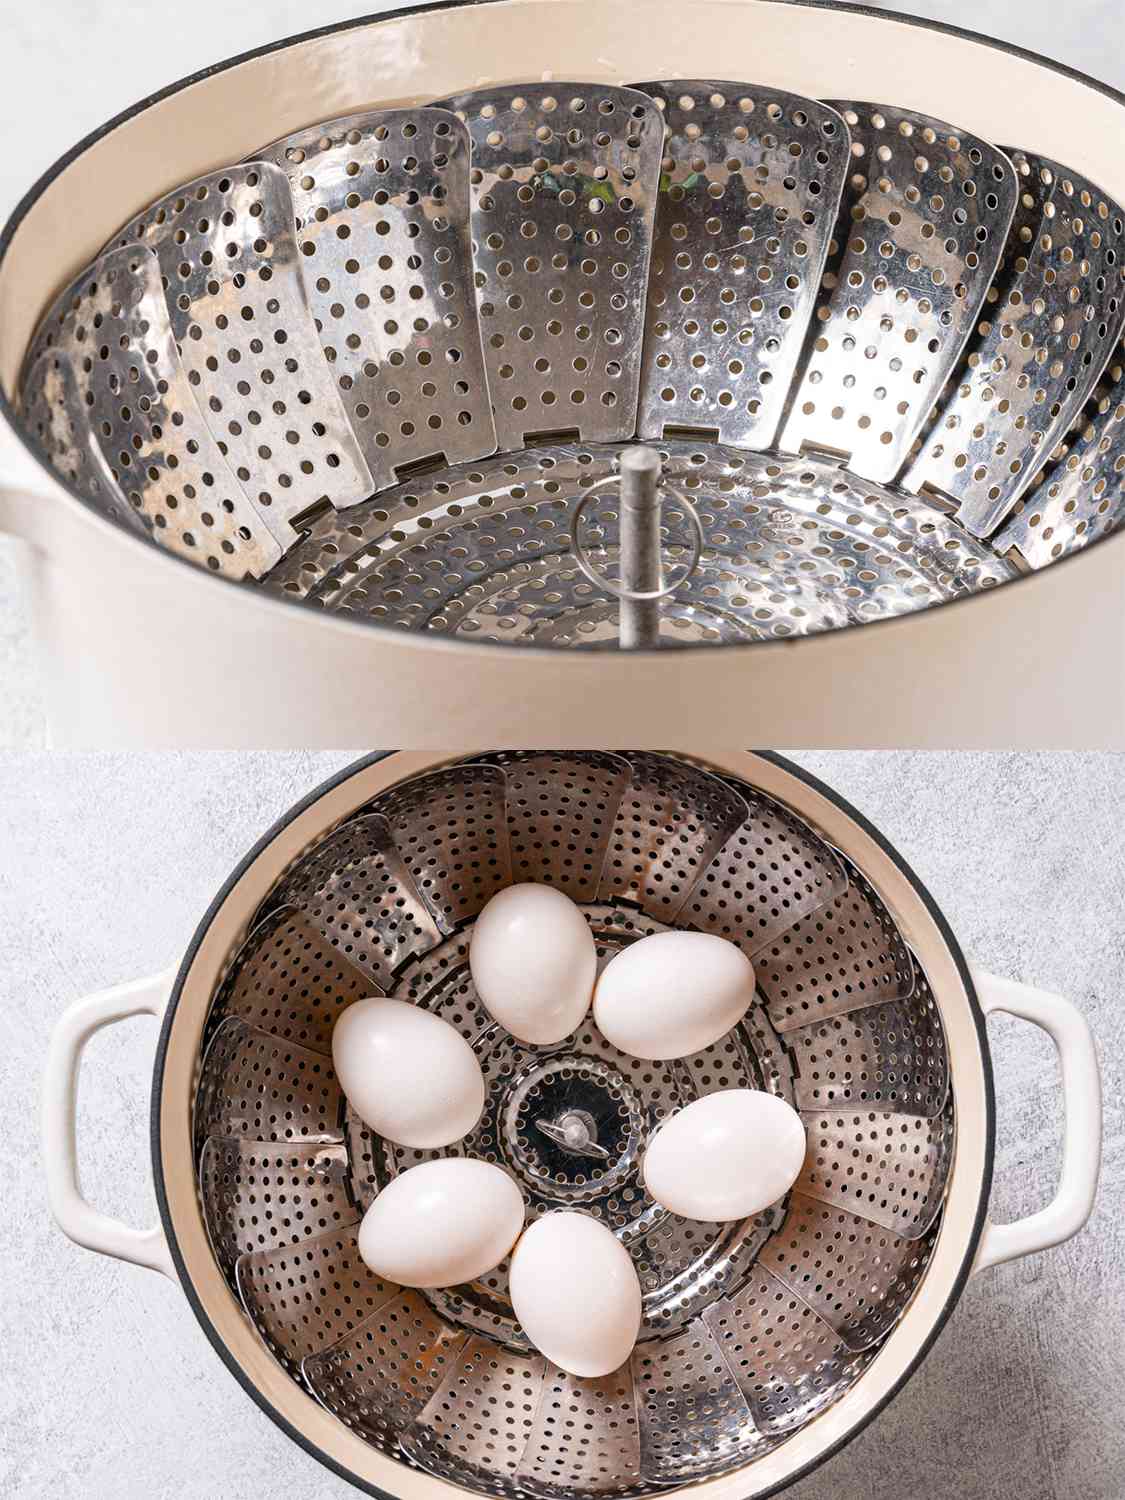 两个影像拼贴。上图显示了一个金属蒸篮子放在一个米色荷兰烤肉锅。下面的图片显示了六个鸡蛋放入蒸笼。